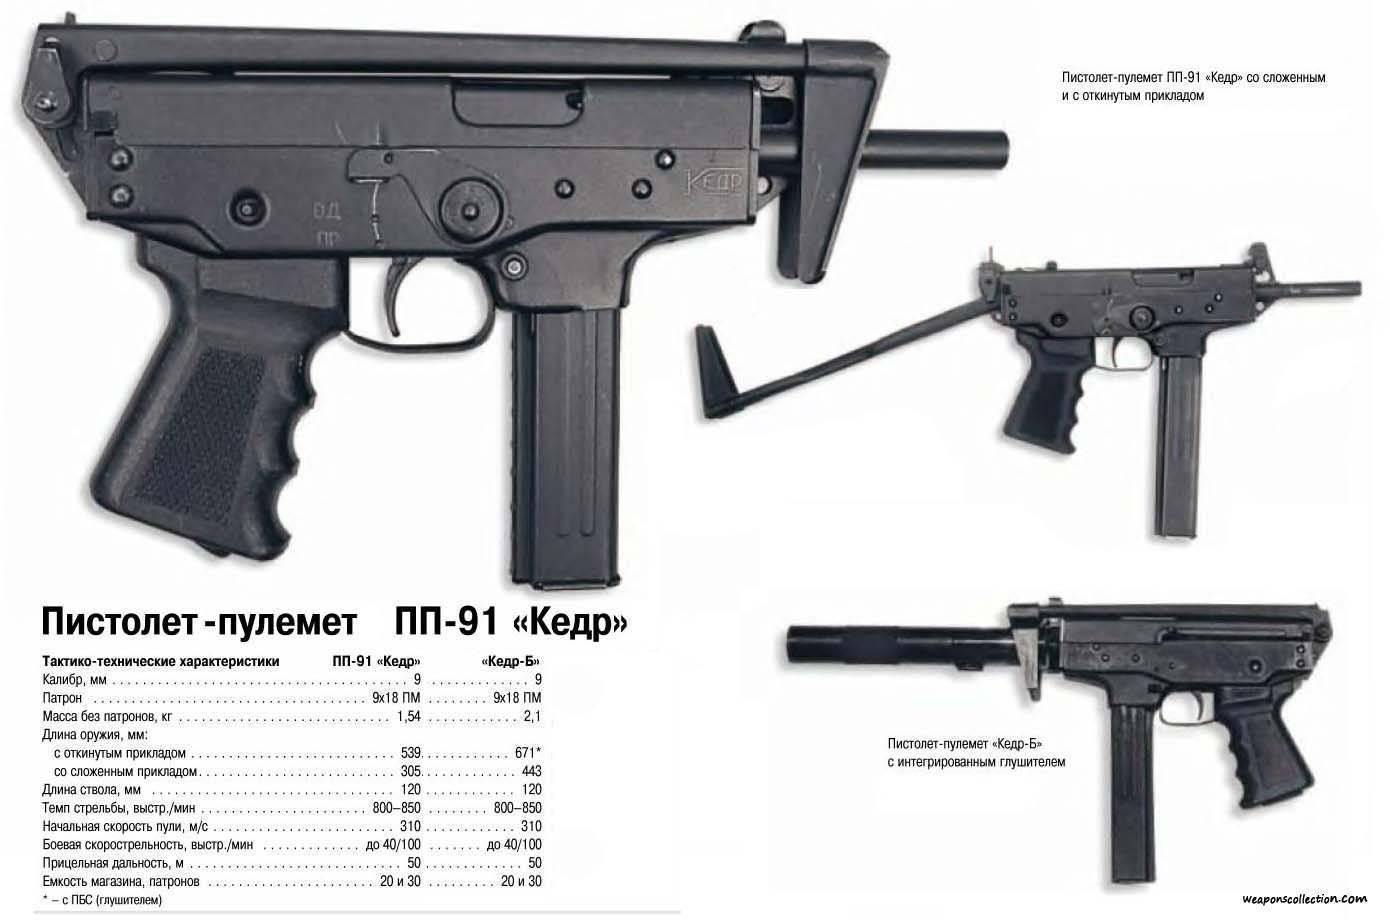 Описание крупнокалиберных пистолетов-пулеметов. пистолеты-пулеметы боевое оружие